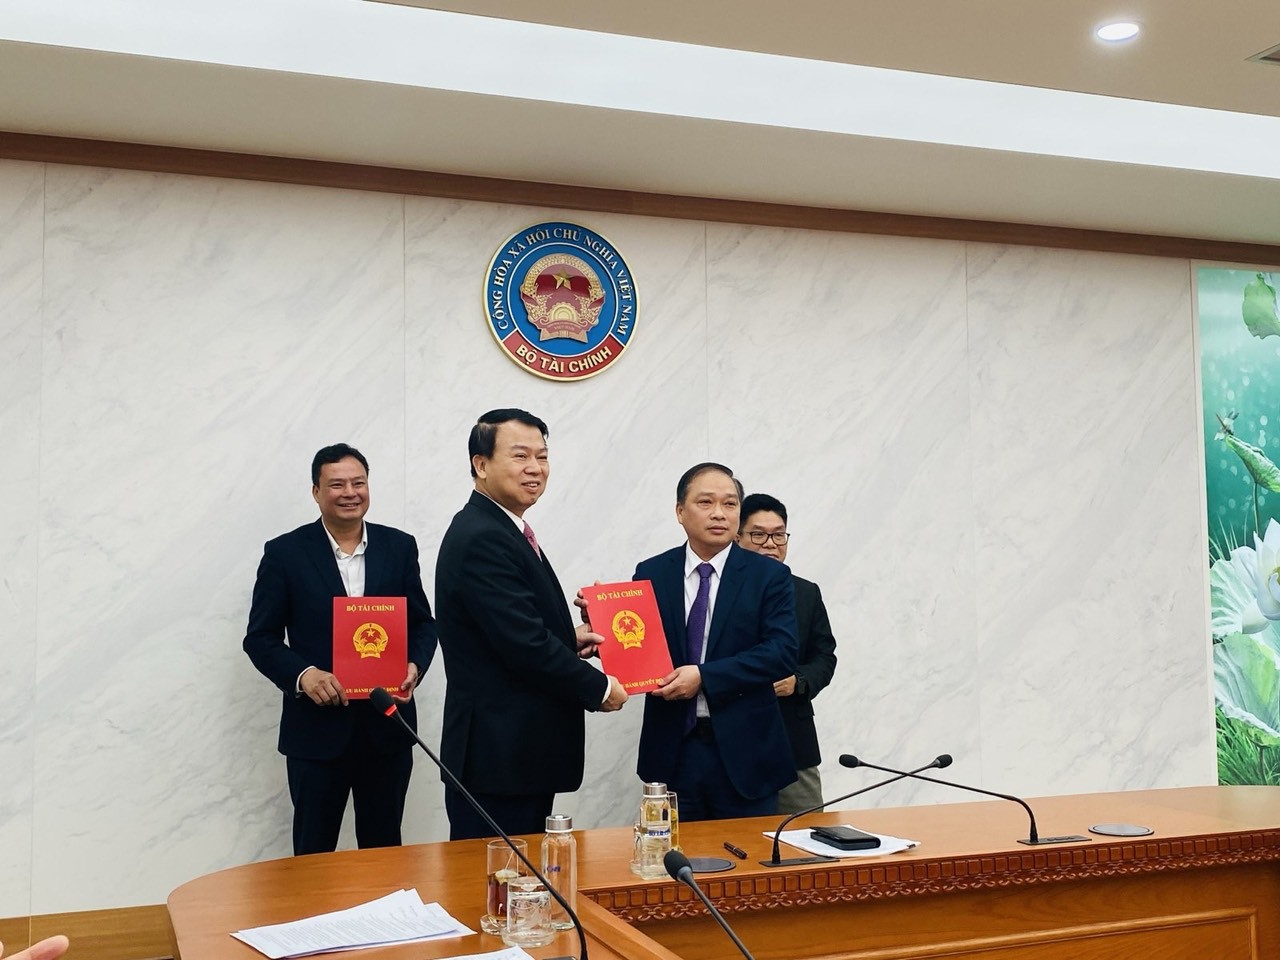 Thứ trưởng Bộ Tài chính Nguyễn Đức Chi trao Quyết định điều động và bổ nhiệm cho ông Lương Hải Sinh.